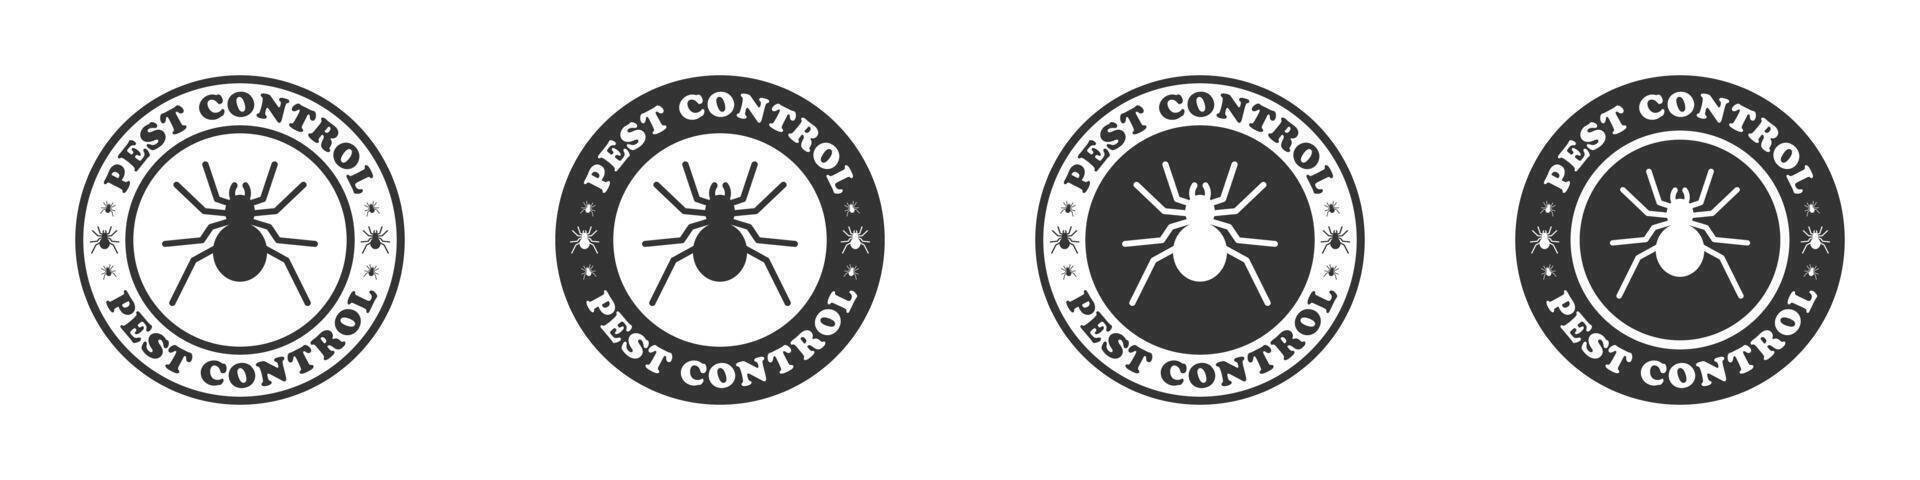 Pest Steuerung Logo. runden Abzeichen mit psider Symbol und Beschriftung. Vektor Illustration.